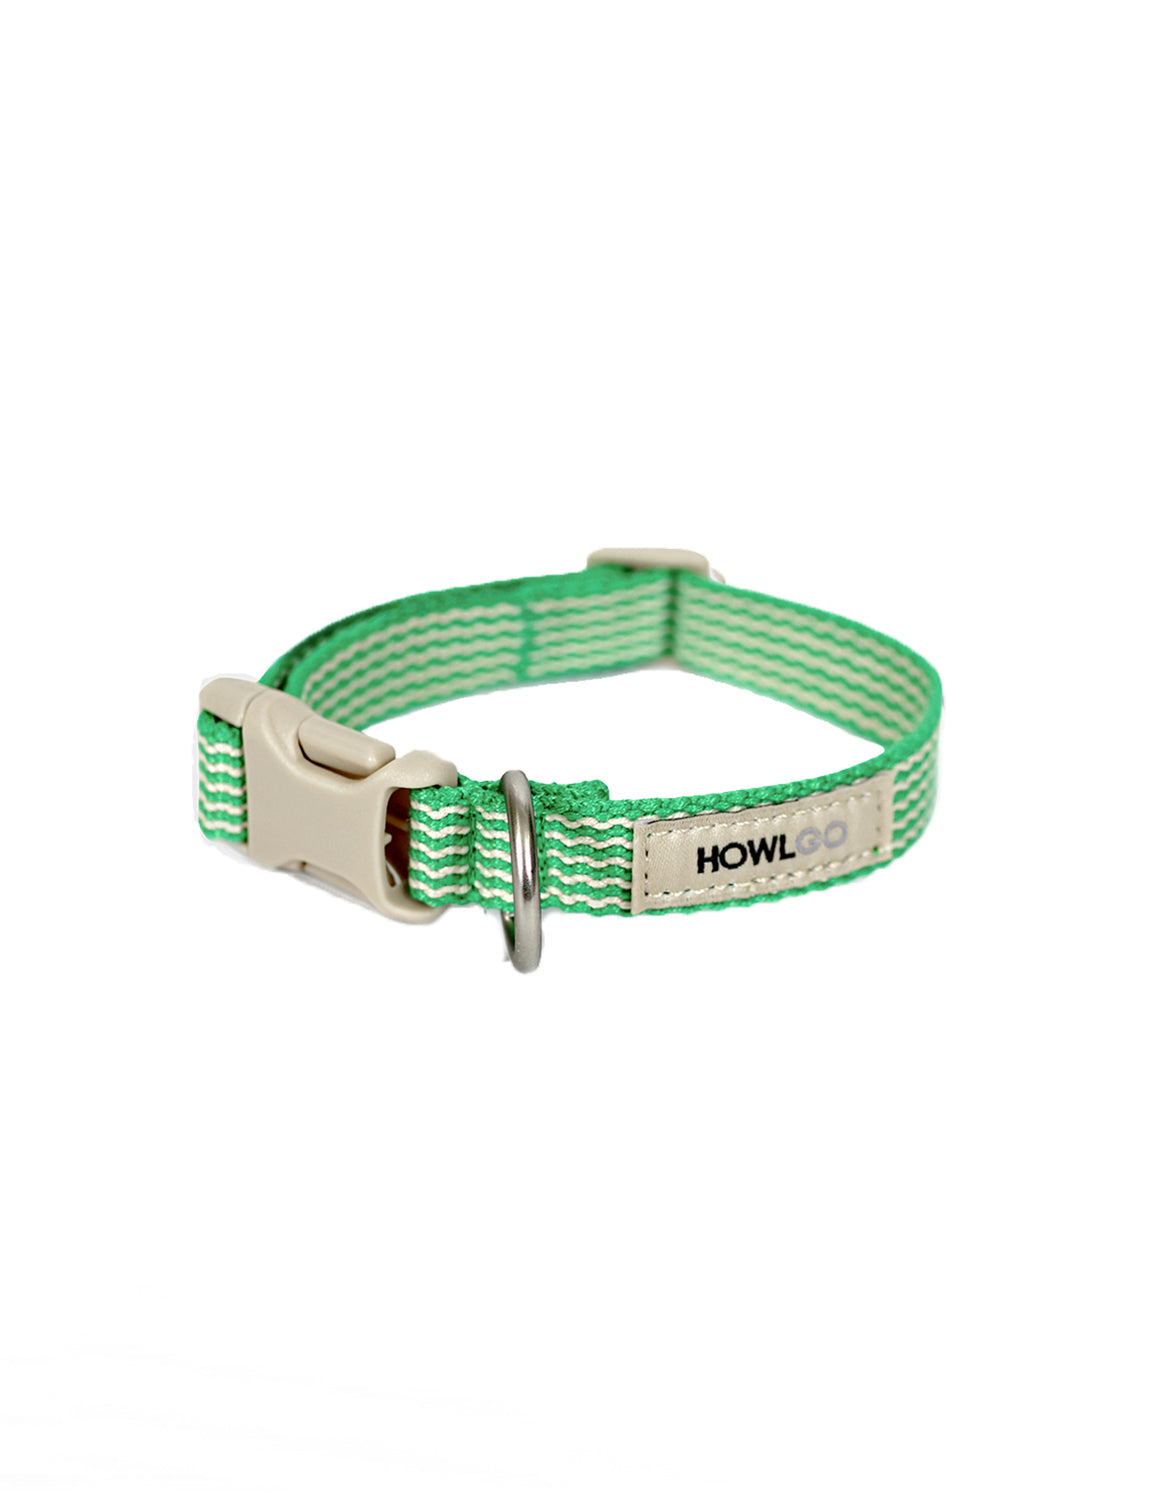 Howlgo Basic Collar,green